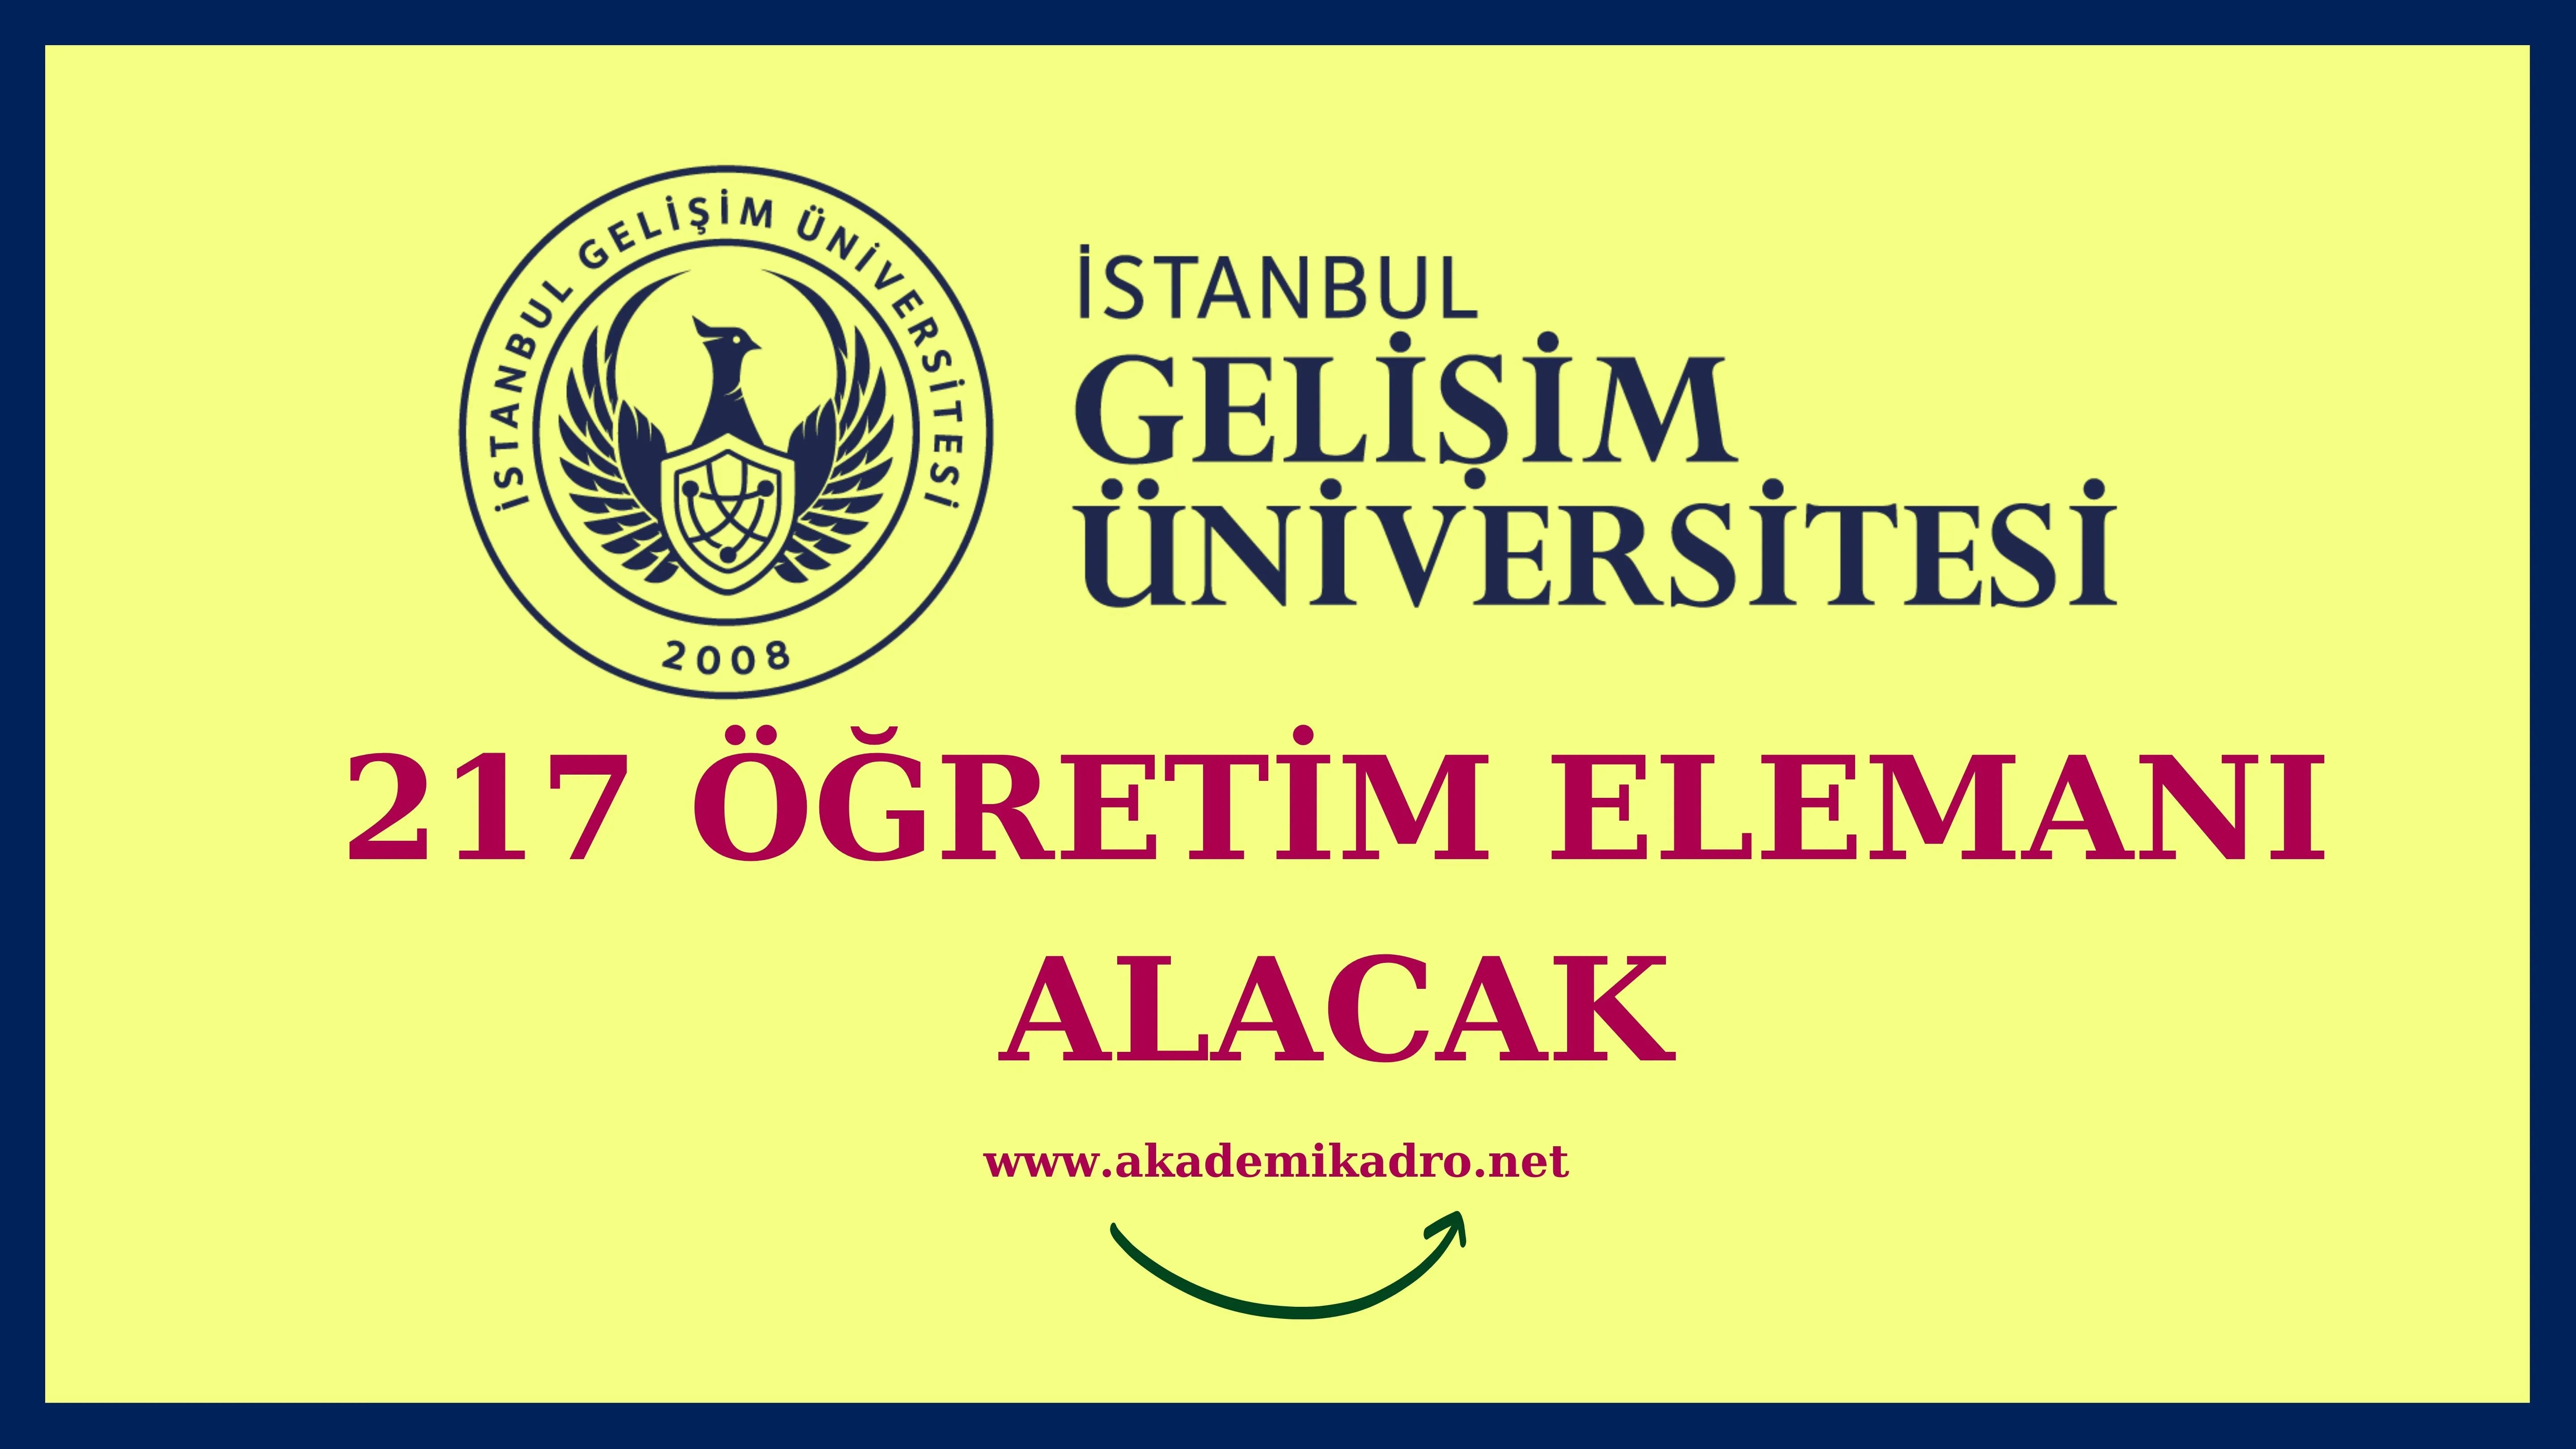 İstanbul Gelişim Üniversitesi 18 Araştırma görevlisi, 23 Öğretim görevlisi, 176 Öğretim üyesi alacak.